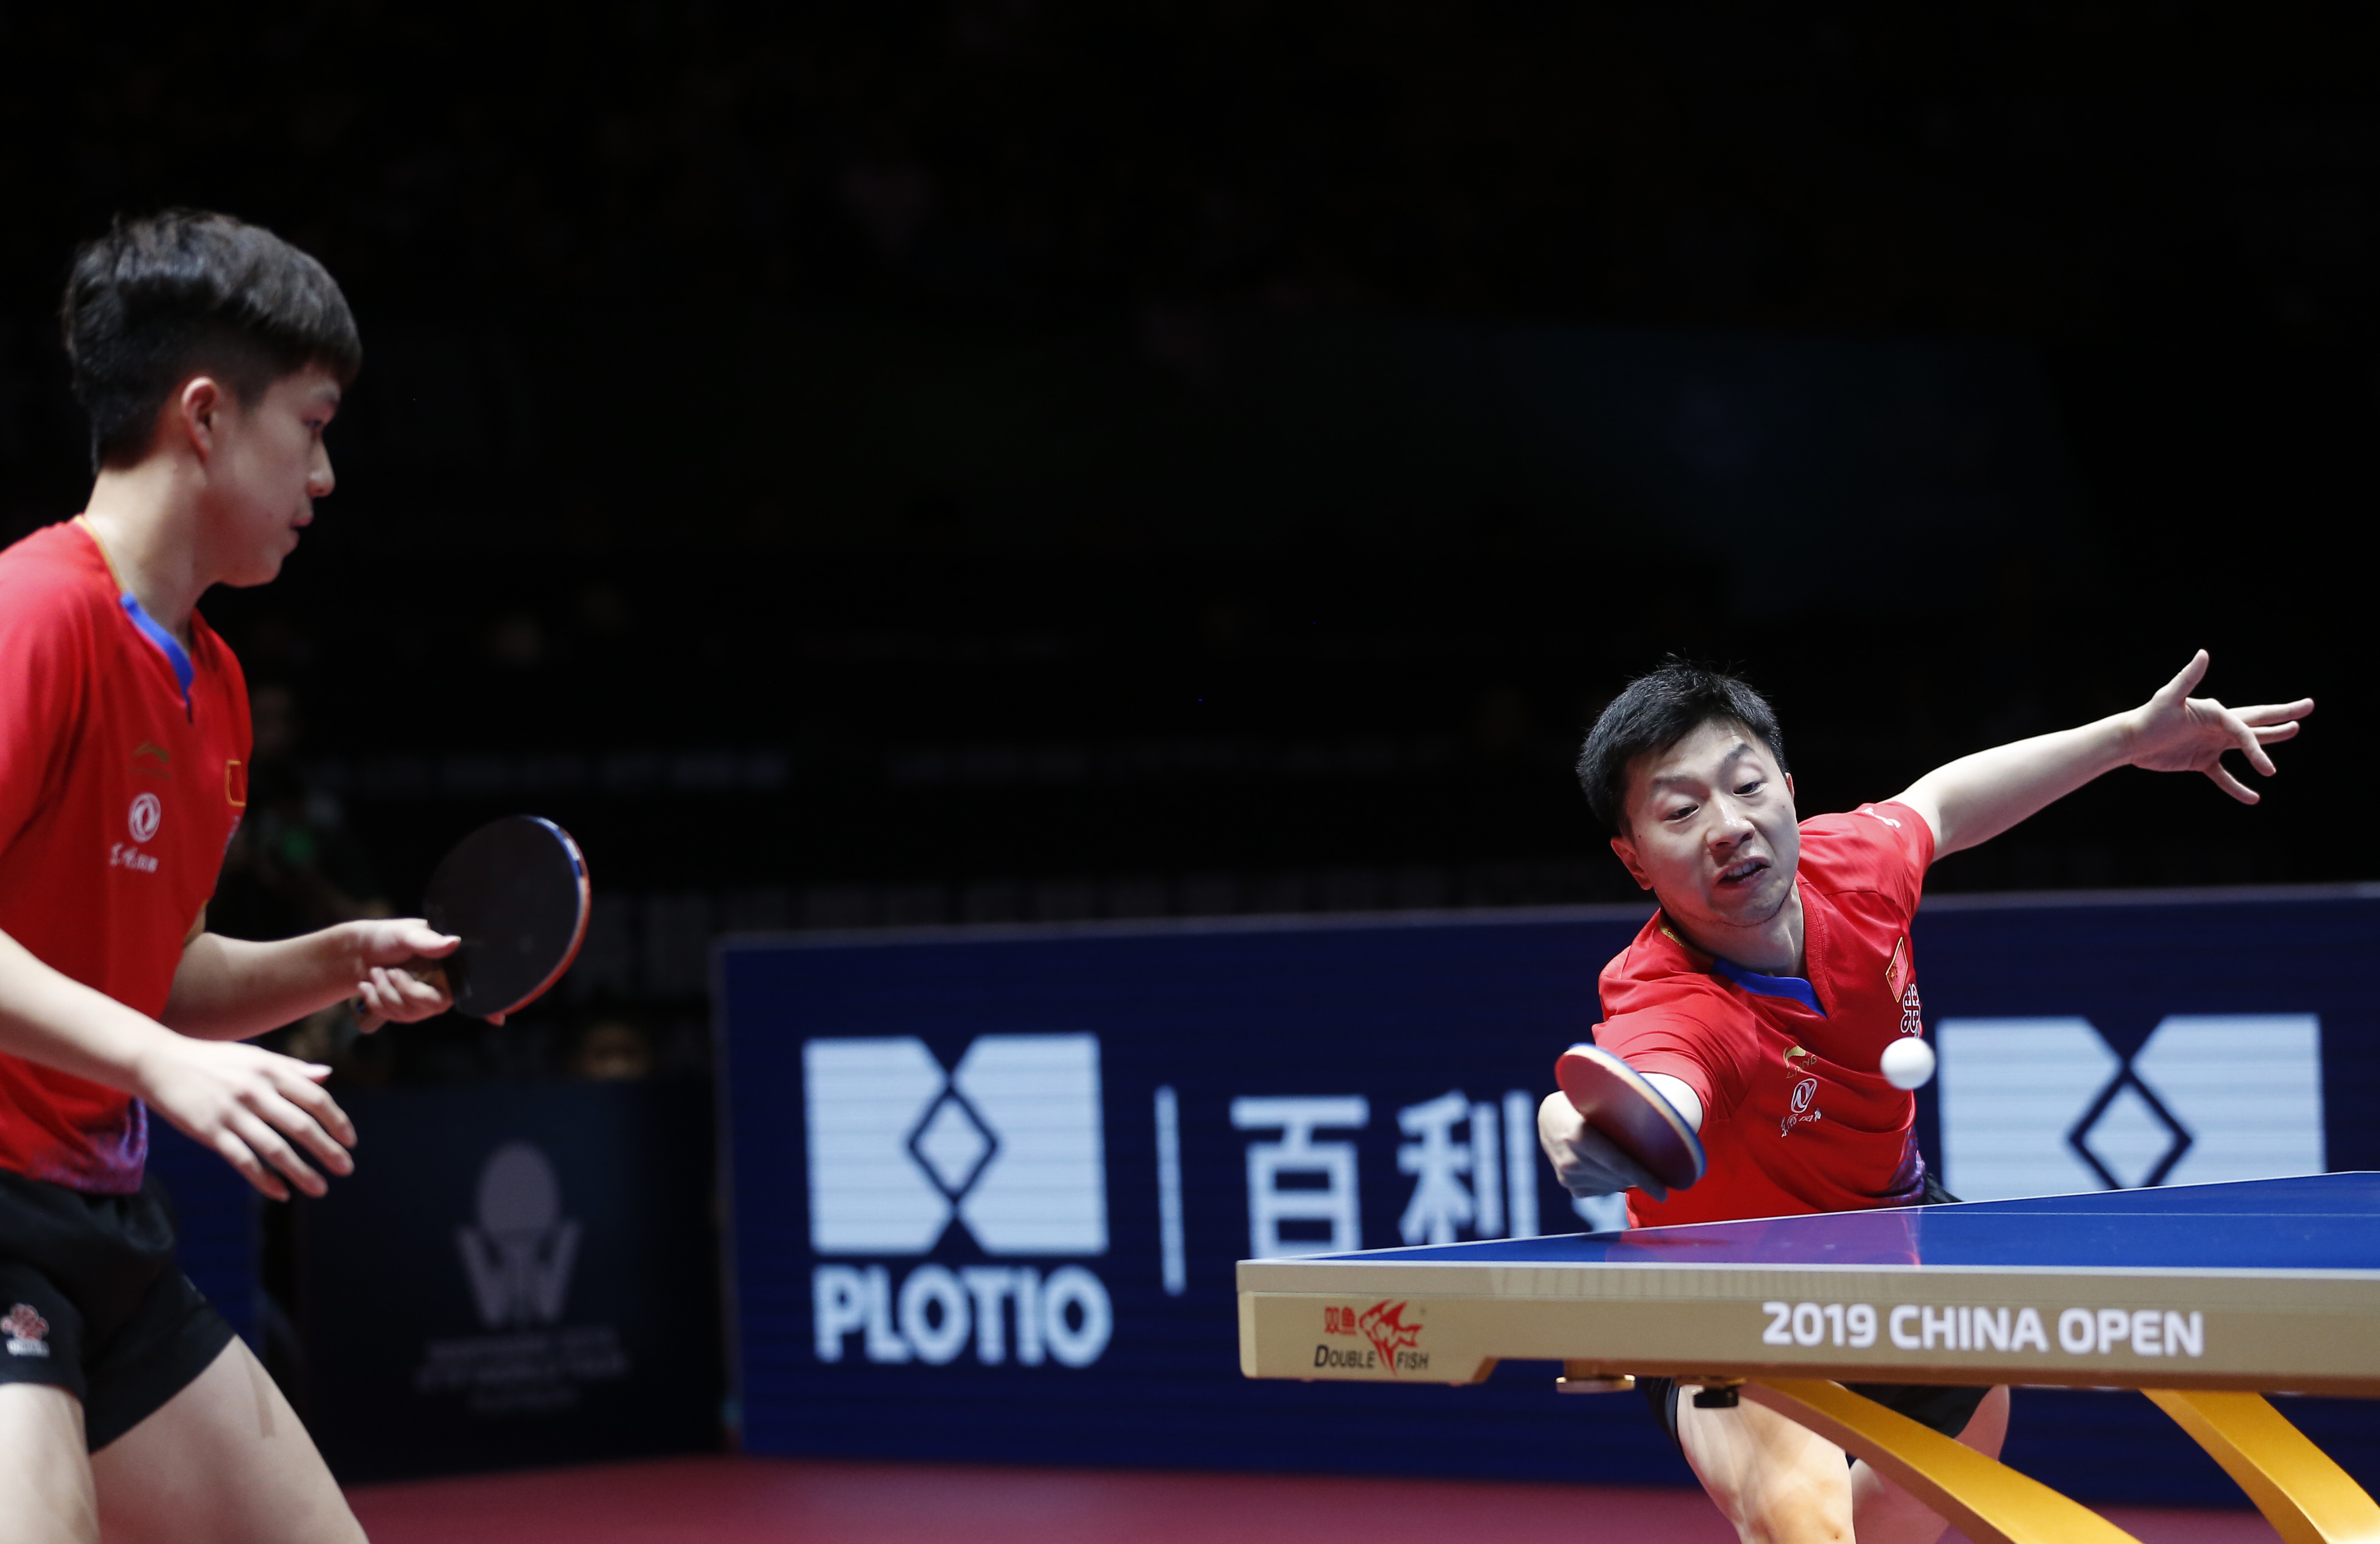 在深圳进行的国际乒联世界巡回赛2019中国乒乓球公开赛男双决赛中